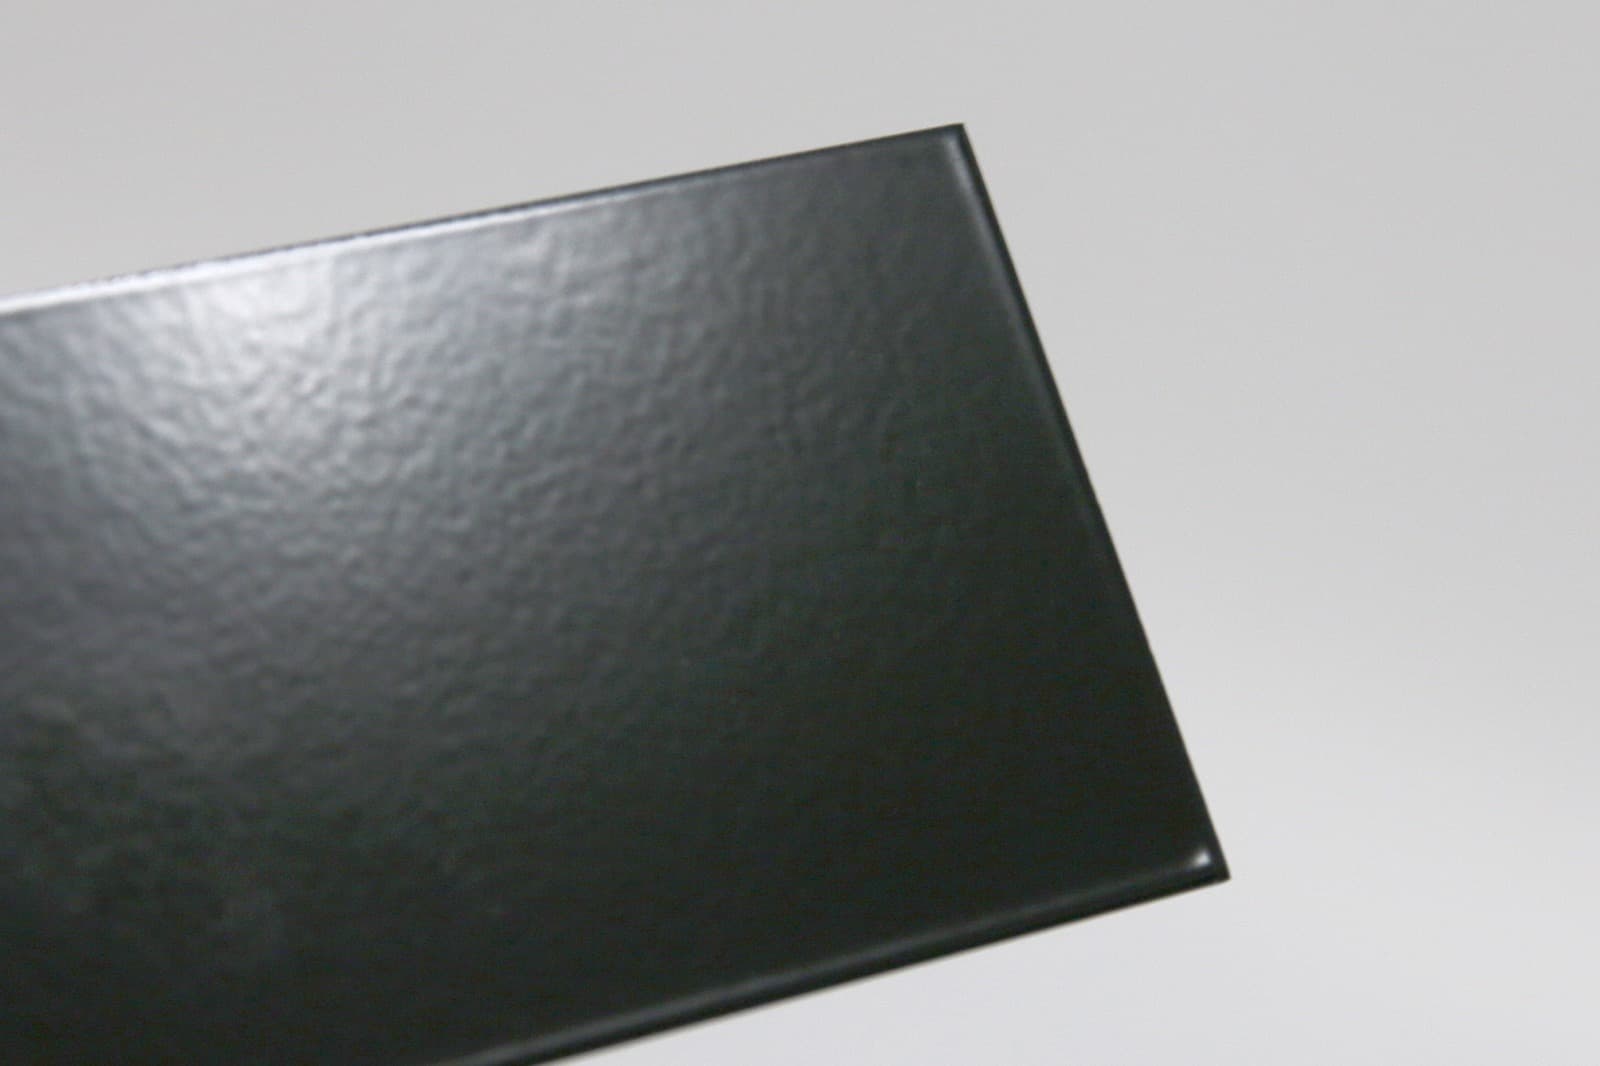 キューブ型レンジフード 照明なし W450×H400 ブラック KB-KC019-03-G162 質感見本。ツヤがあります